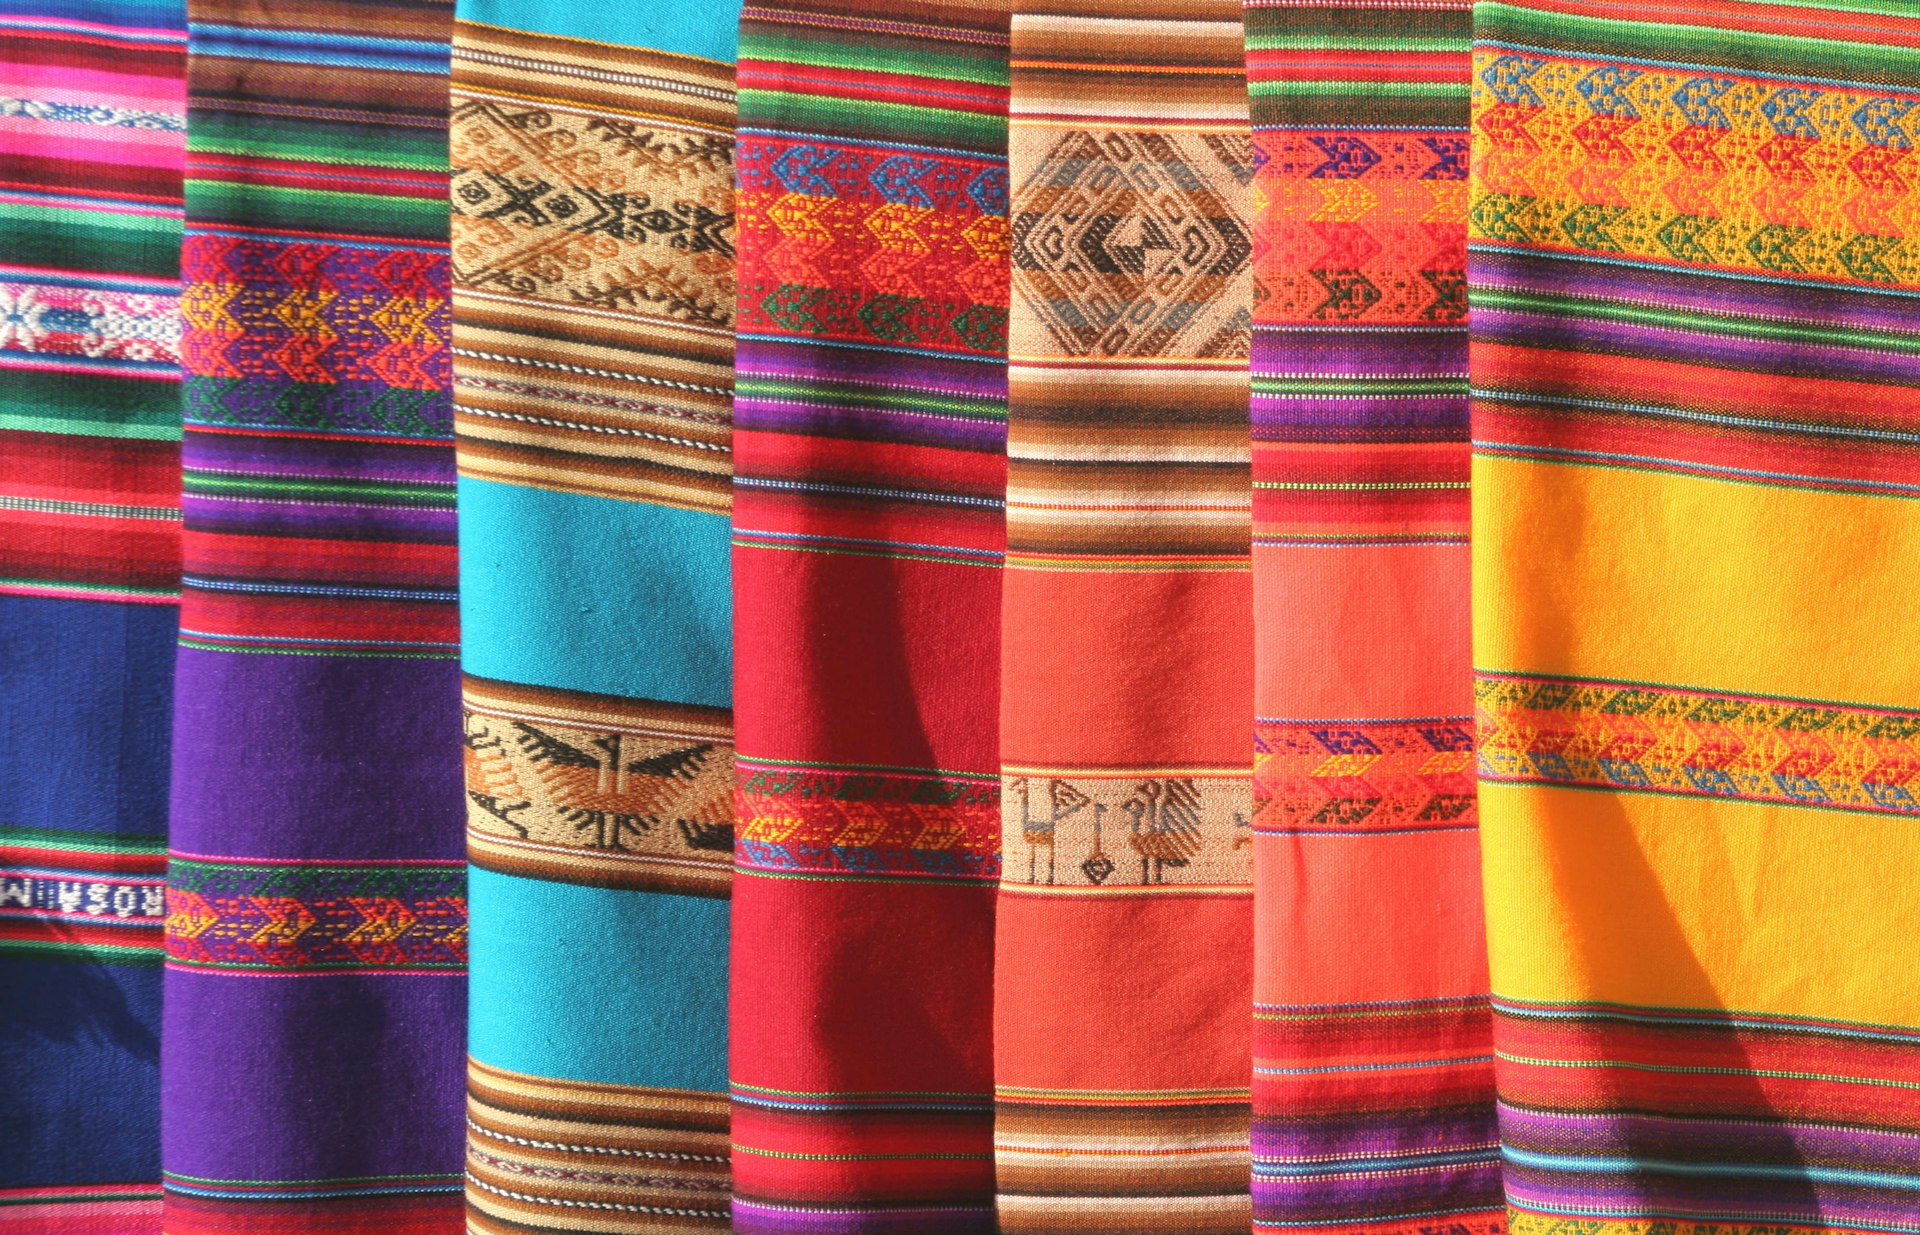 Native American blankets